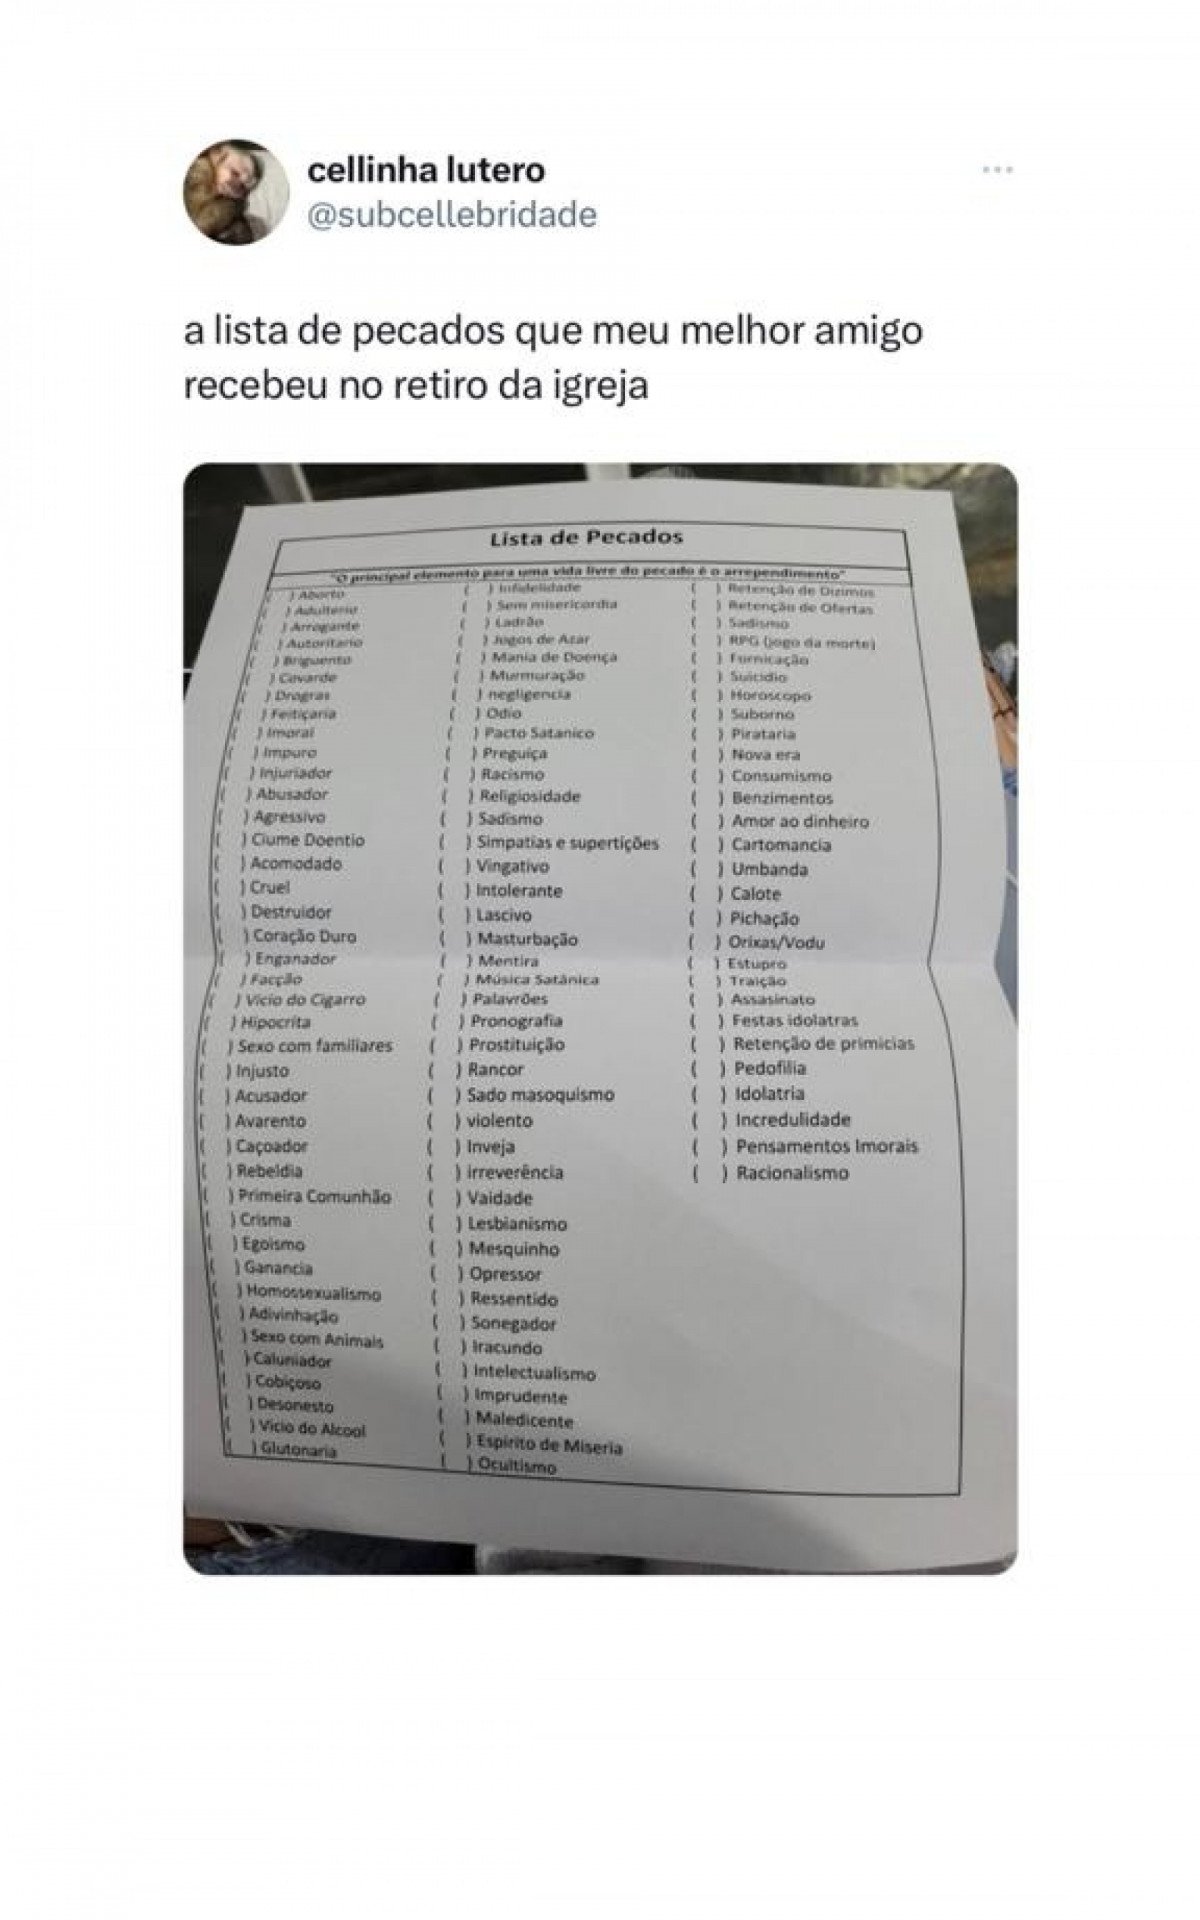 De horóscopo a aborto: 'Lista de pecados' recebida em retiro vira chacota  nas redes sociais, Diversão